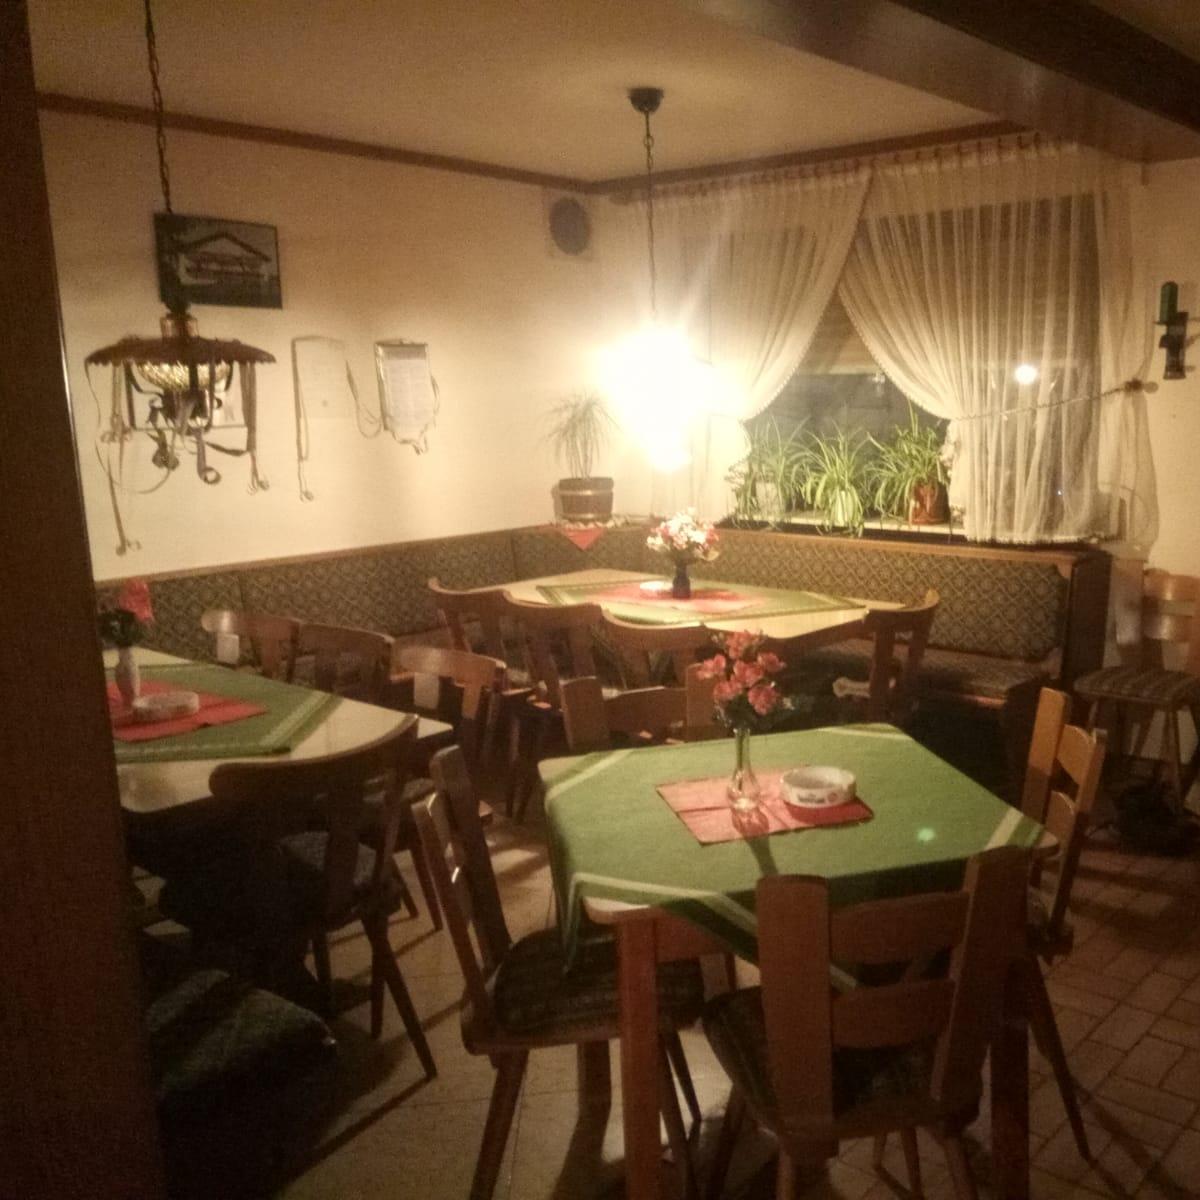 Restaurant "Gaststätte Auth" in  Kalbach